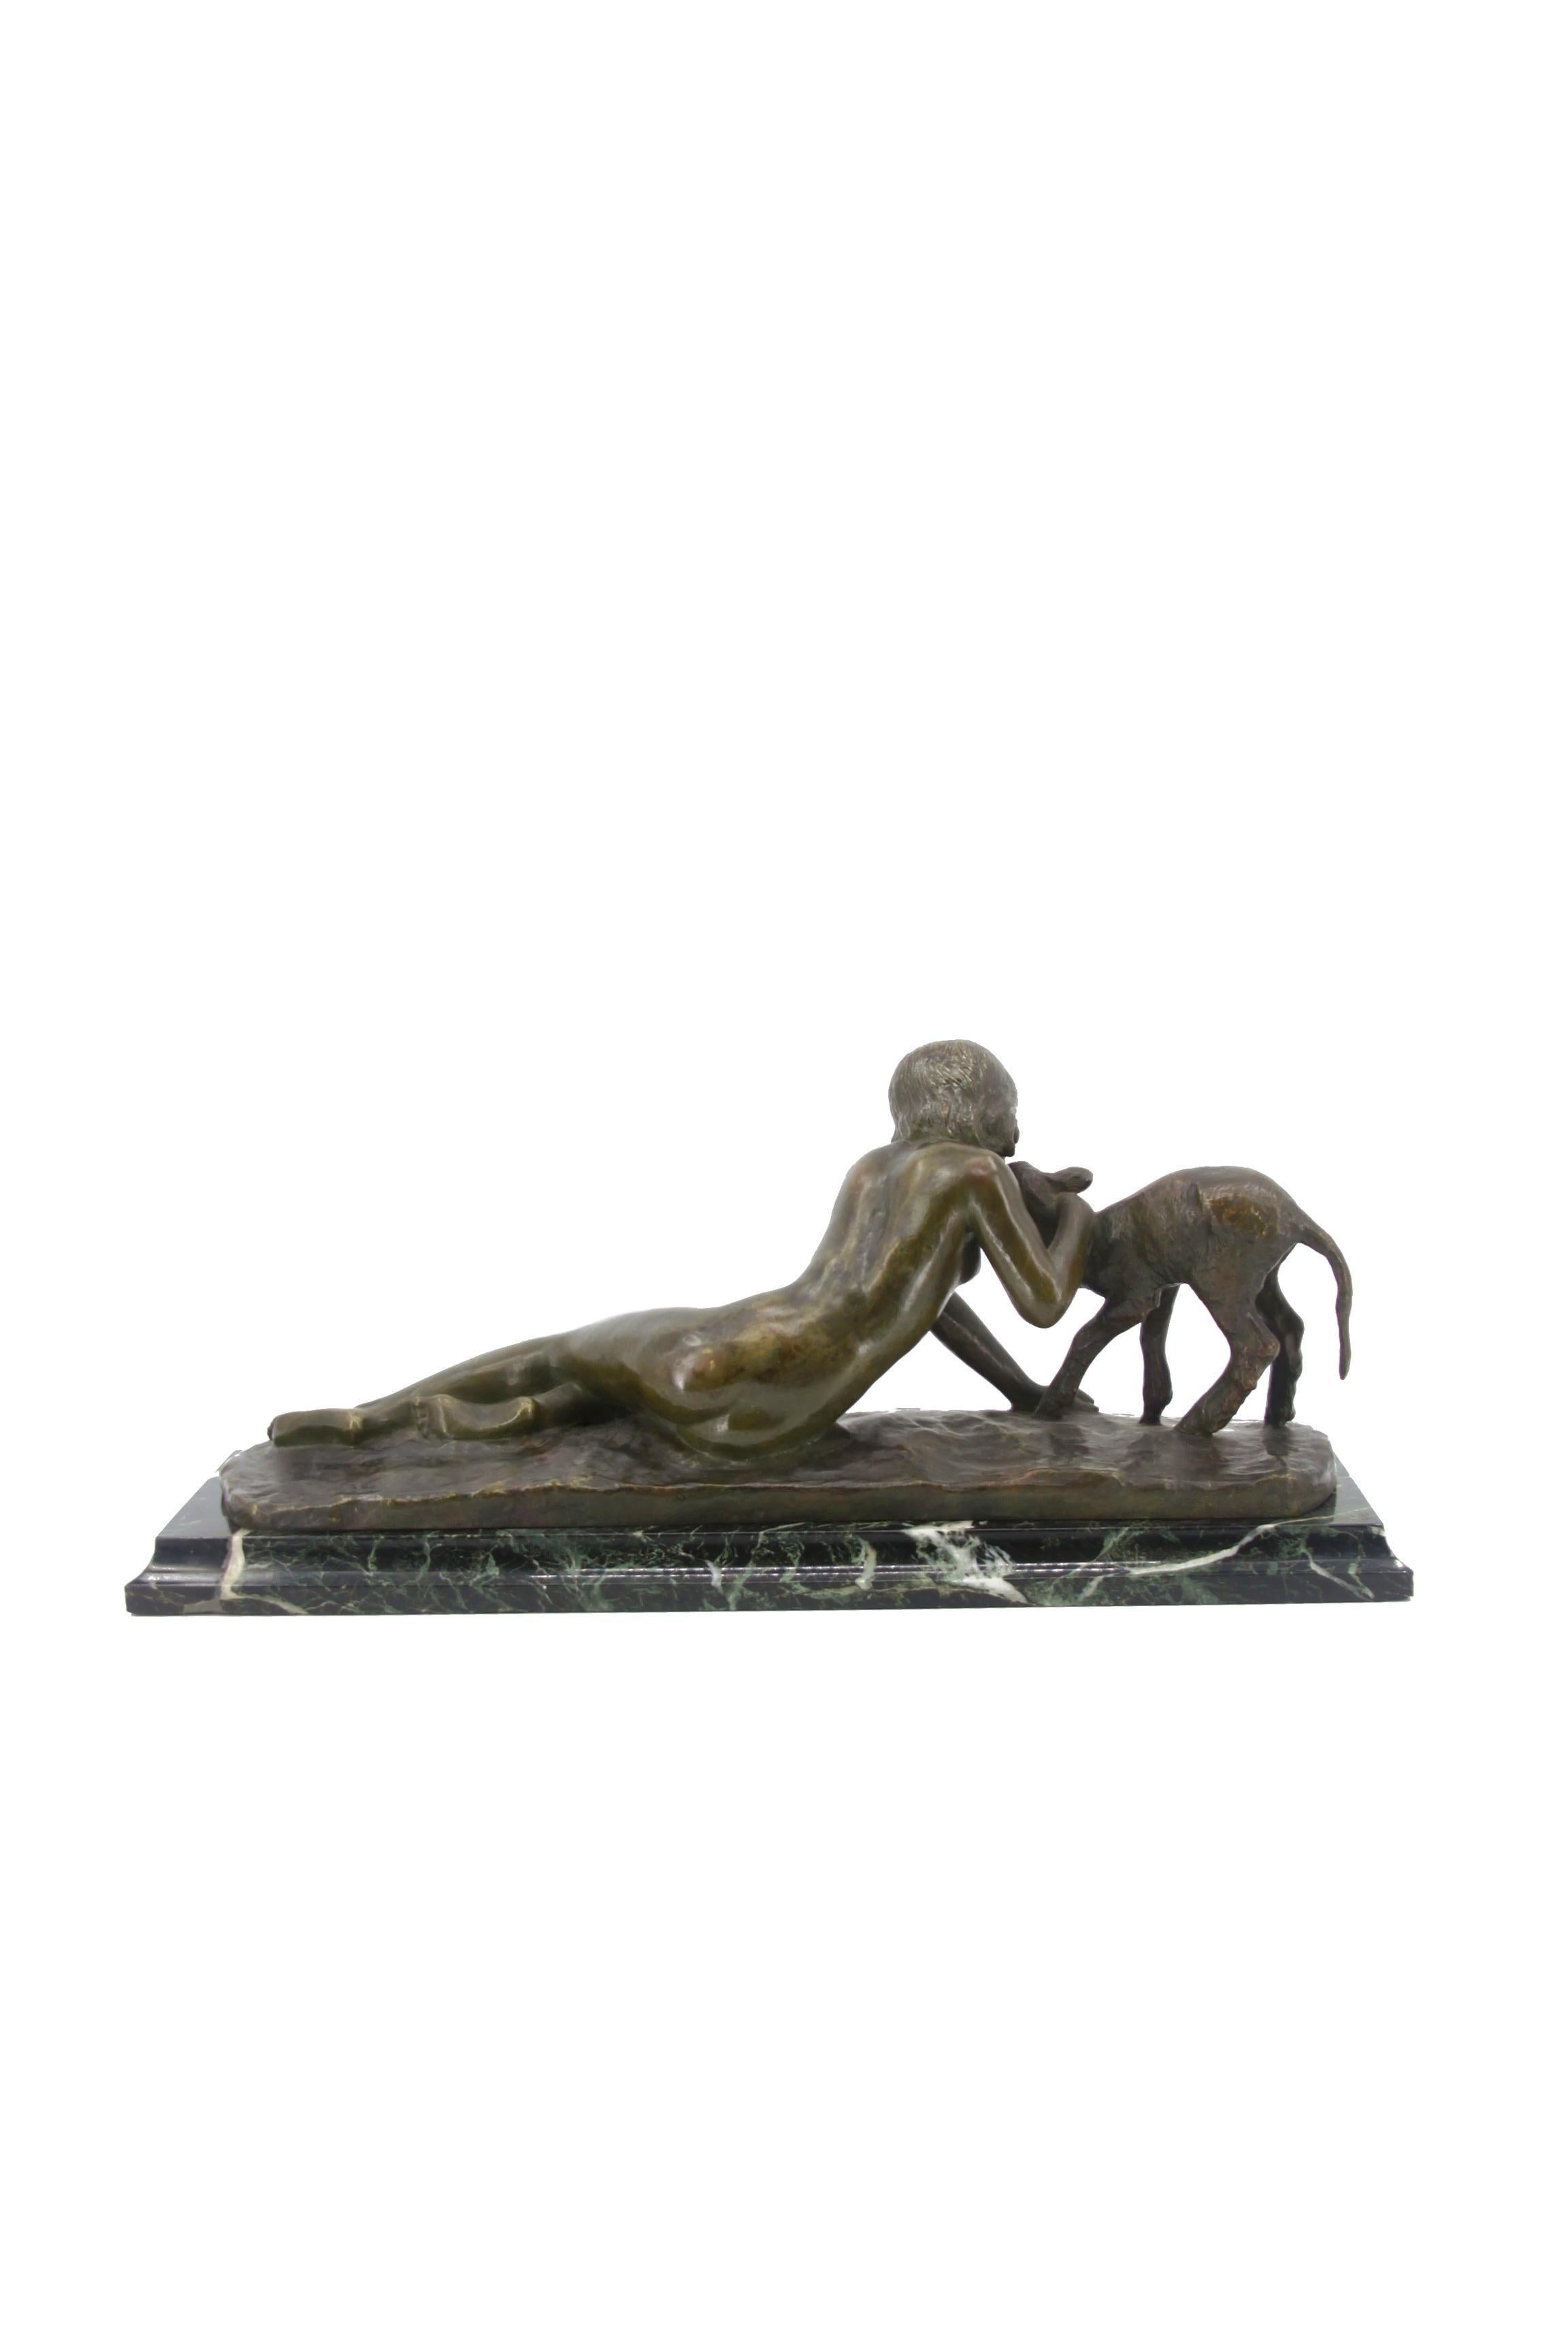 Sculpture en bronze à patine verte et marron foncé représentant une jeune femme embrassant un agneau, signée par Ary Bitter, sur un socle en marbre vert noir.

Ary Bitter (1883-1973) était un artiste français, surtout connu pour ses sculptures